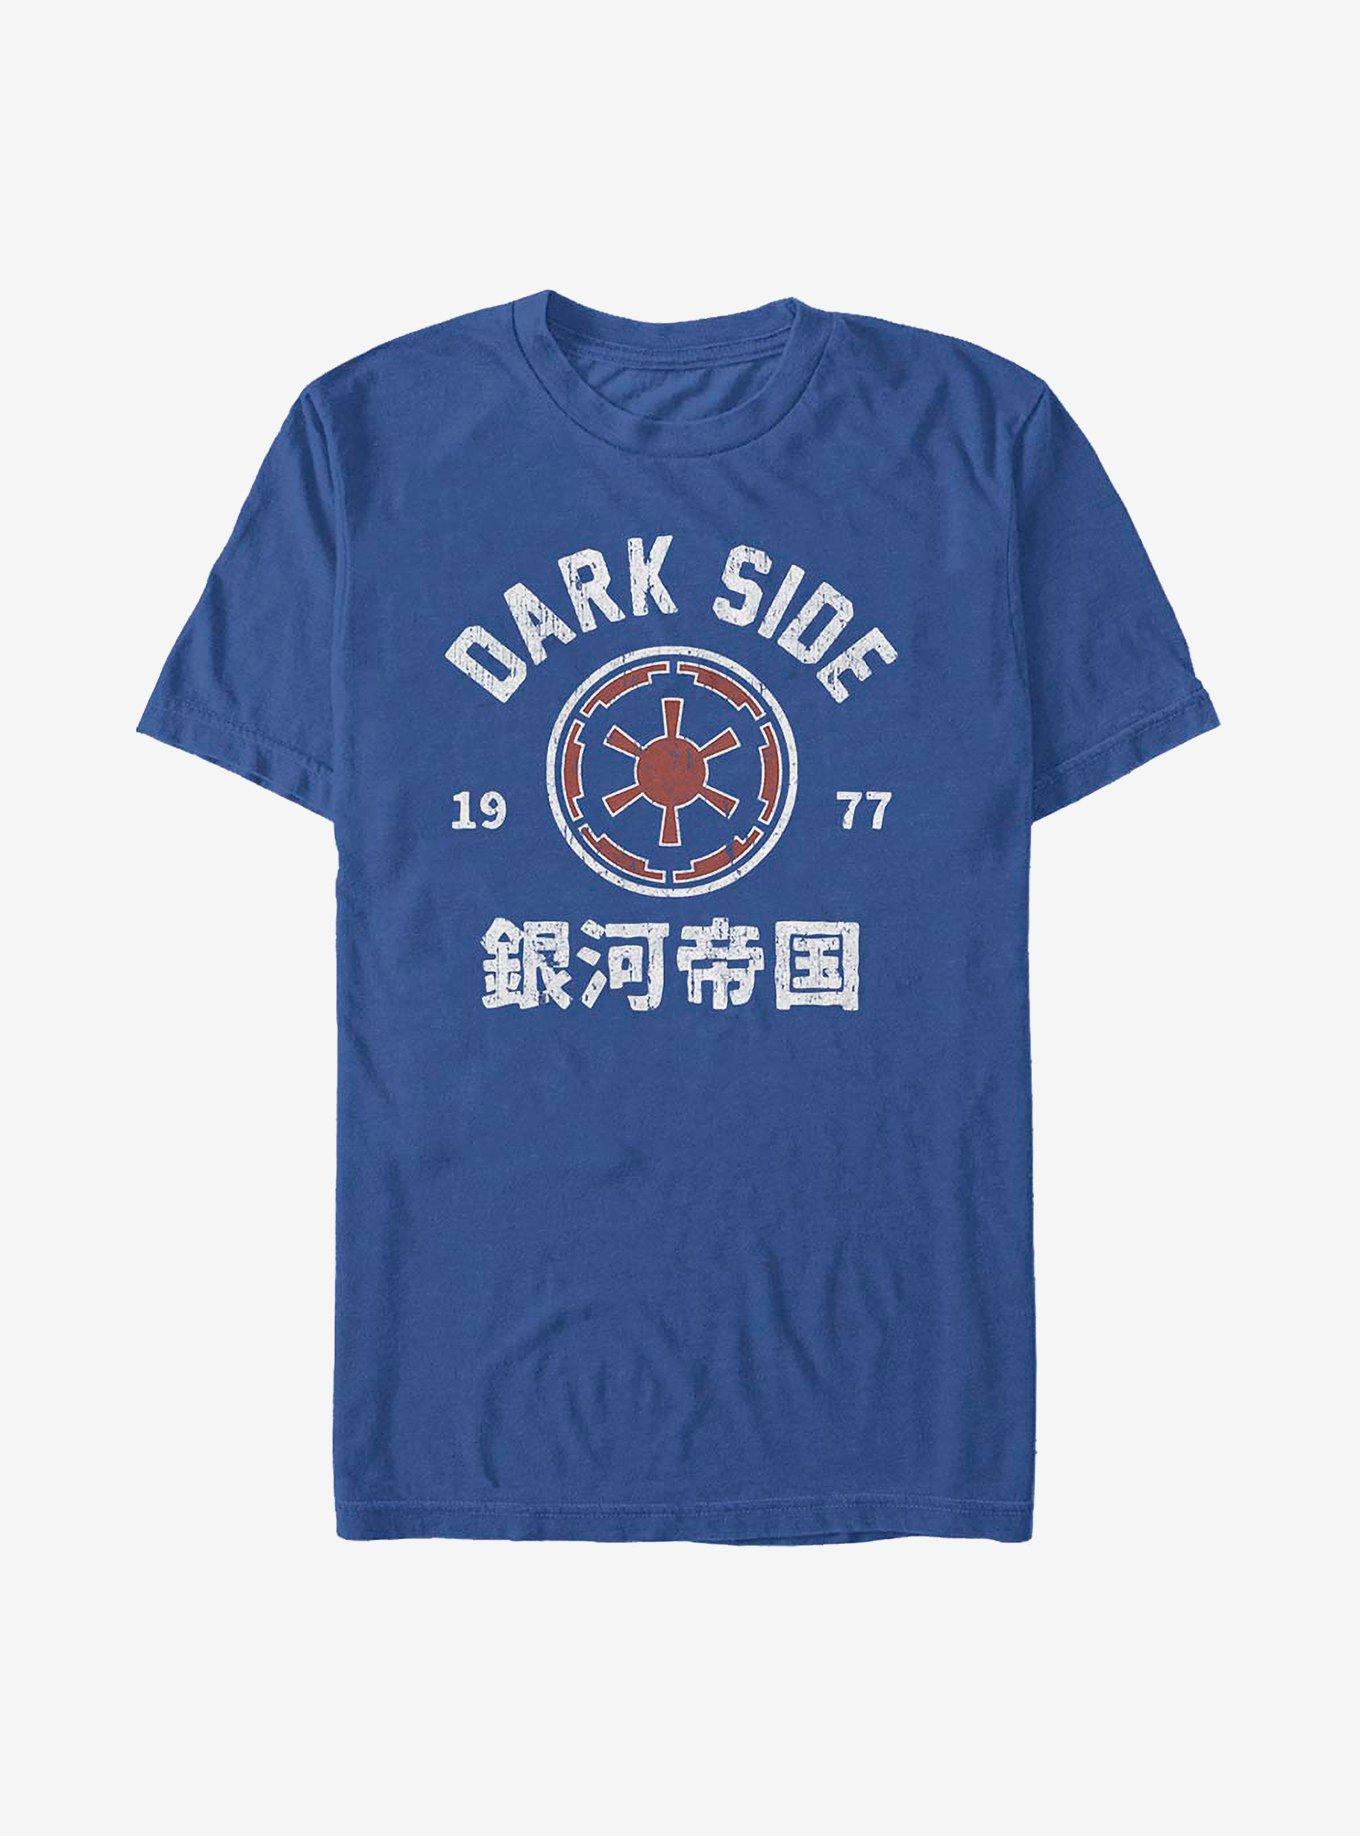 Star Wars Vintage Dark Side T-Shirt